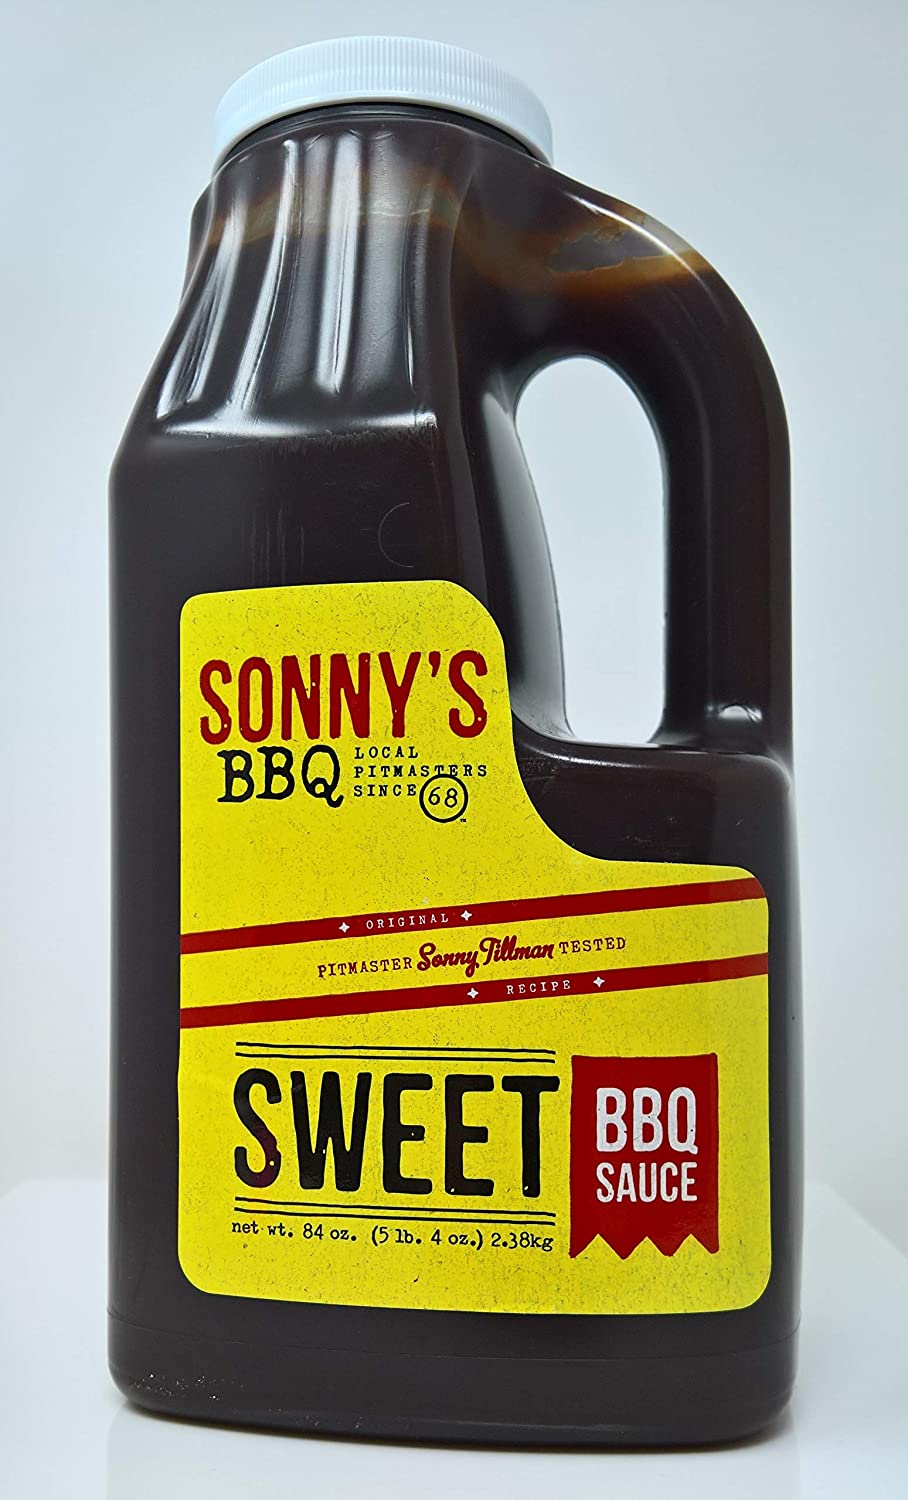 Sonny's Authentic Sweet Bar-B-Q Sauce 84oz.